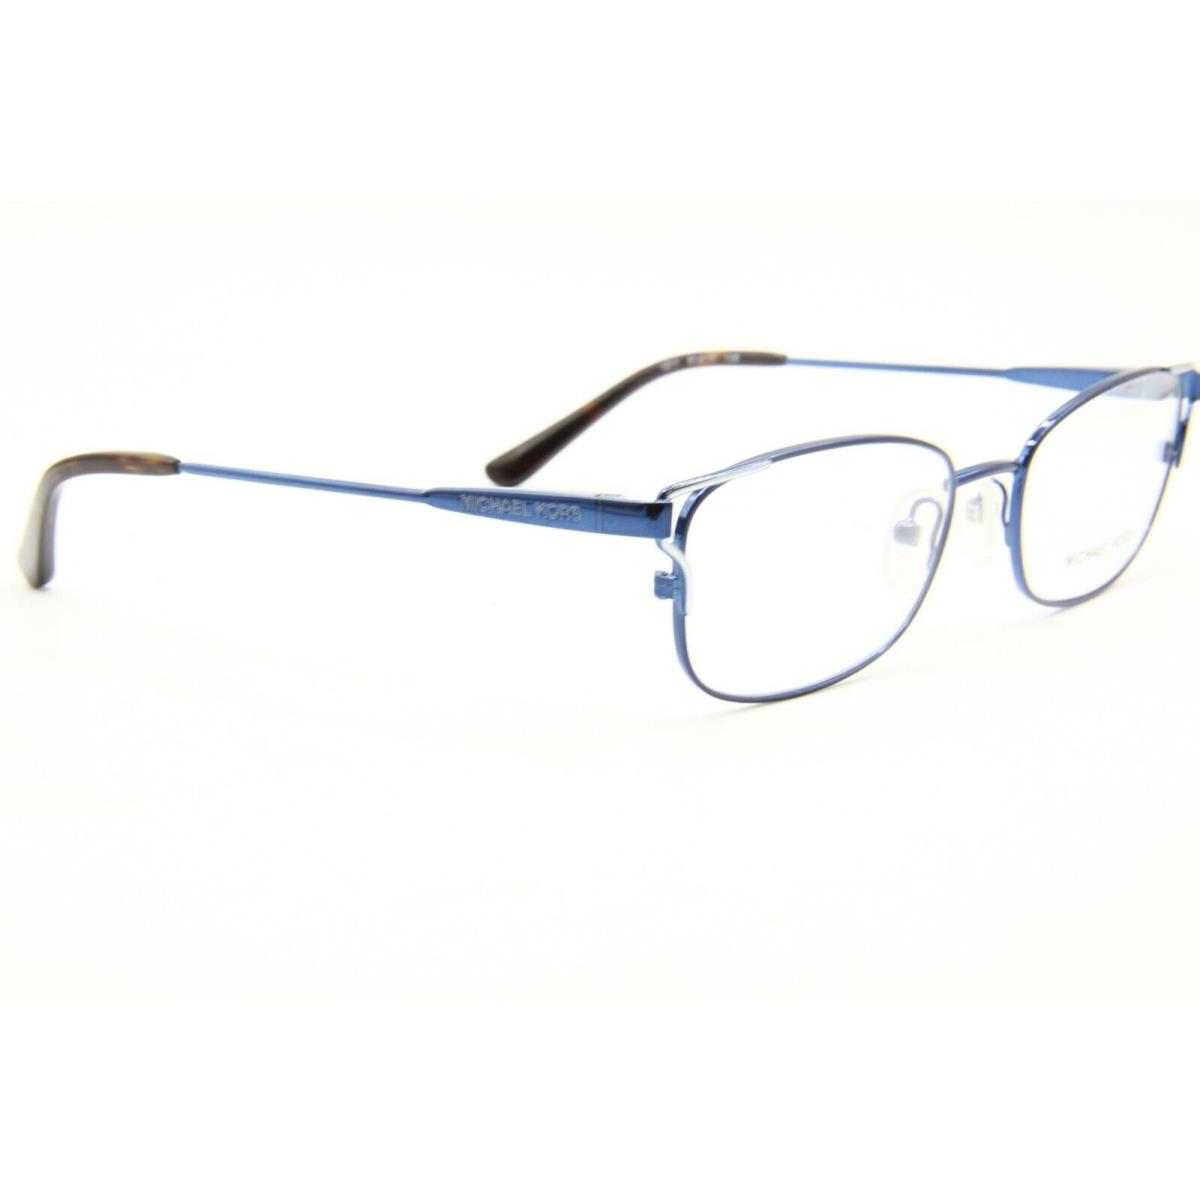 Michael Kors eyeglasses  - Blue Frame 1